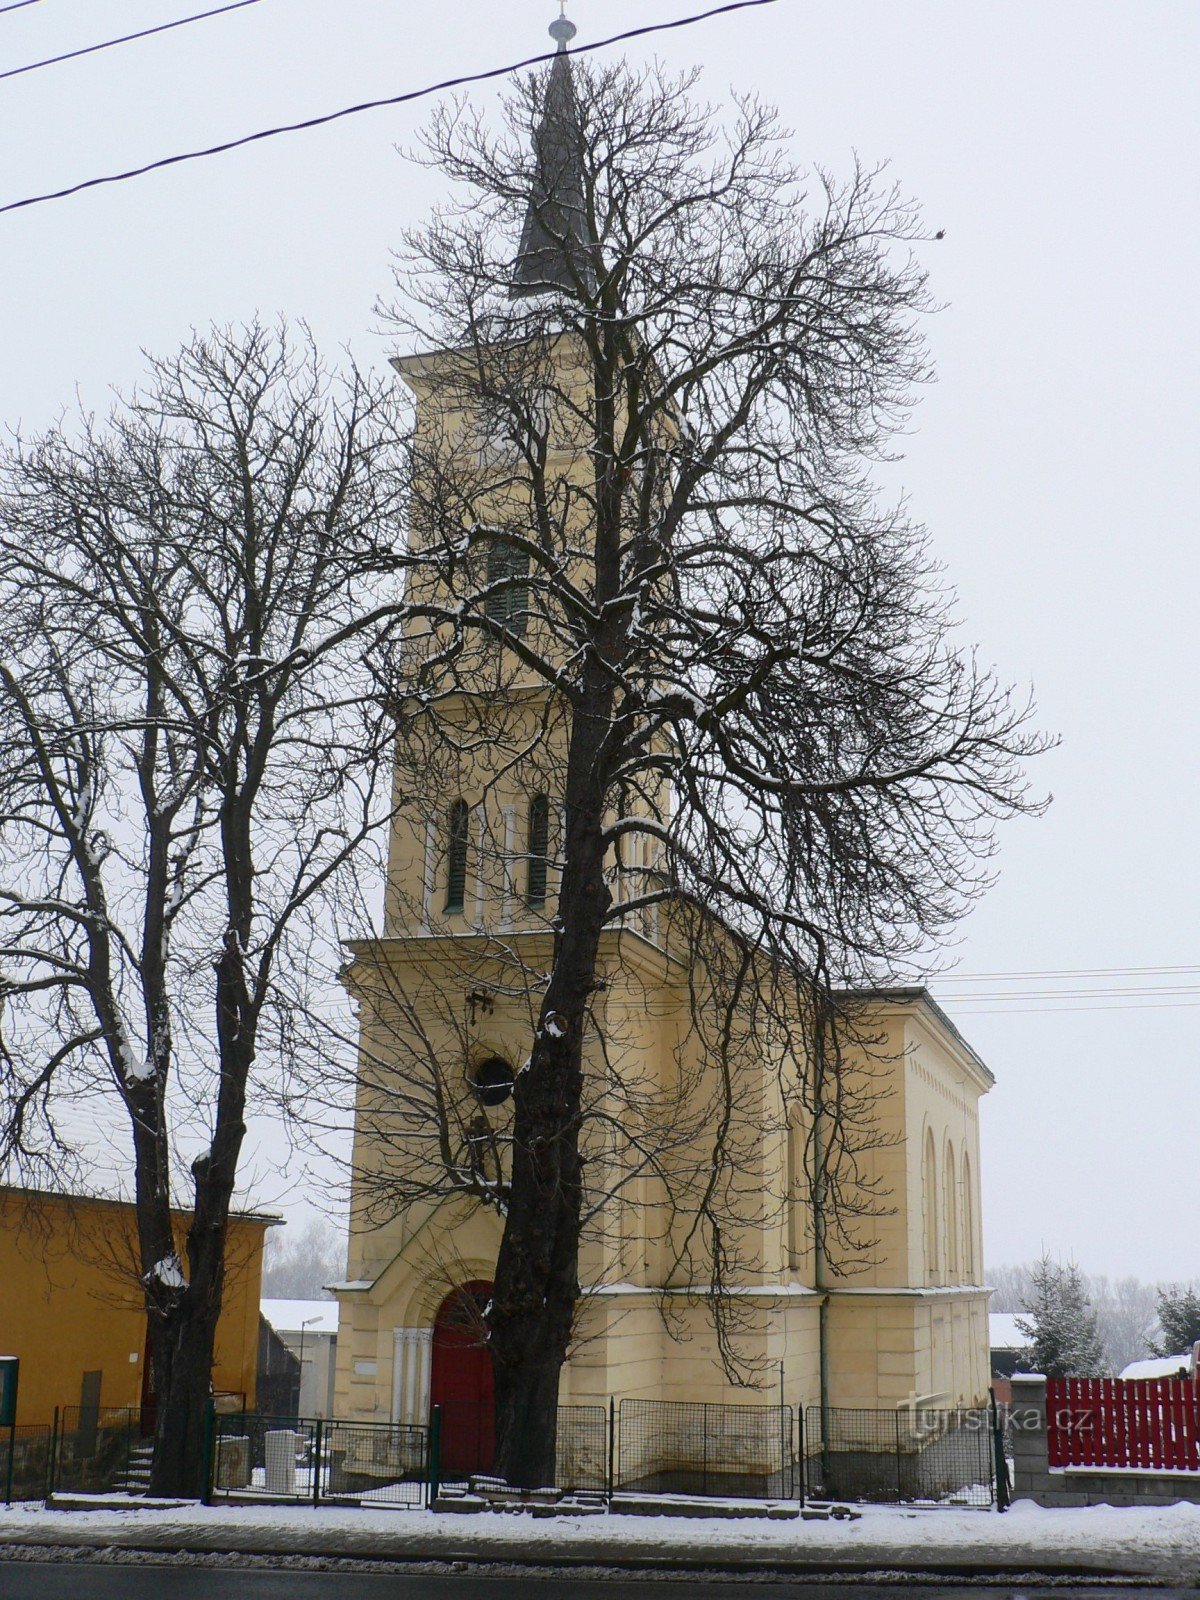 la chiesa è stata fotografata male: è nascosta dietro gli alberi